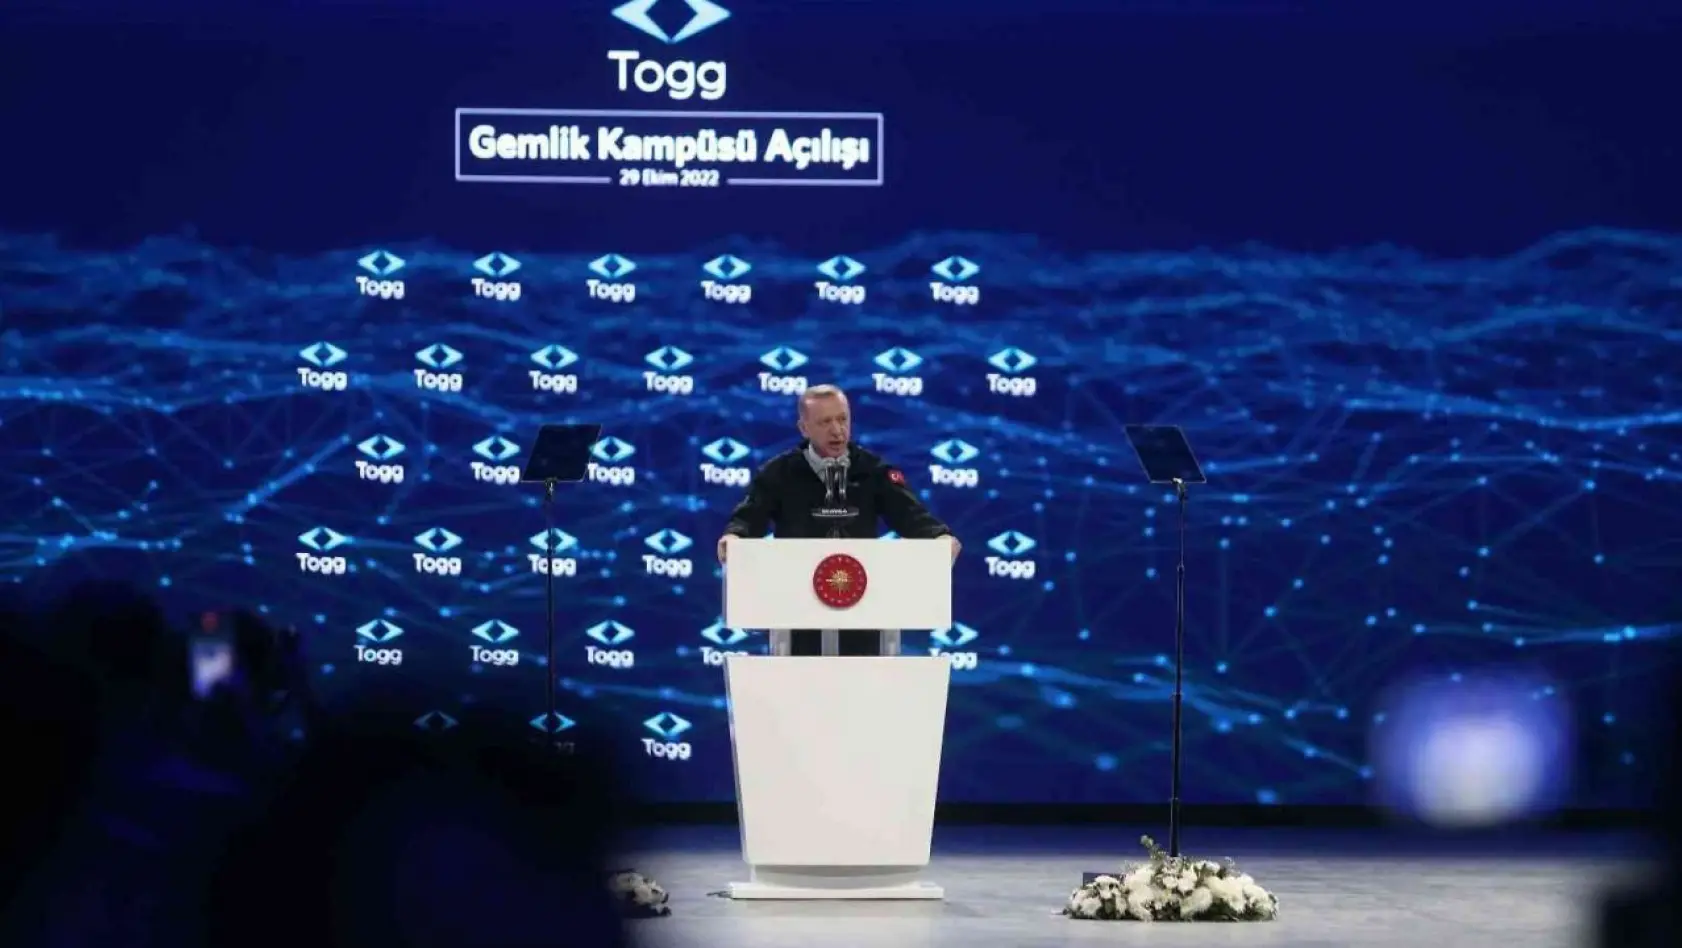 Cumhurbaşkanı Erdoğan: 'Togg ülkemizin güçlü yarınları için bu ortak hayali kurmanın tadını hepimize yaşatan projenin adıdır'